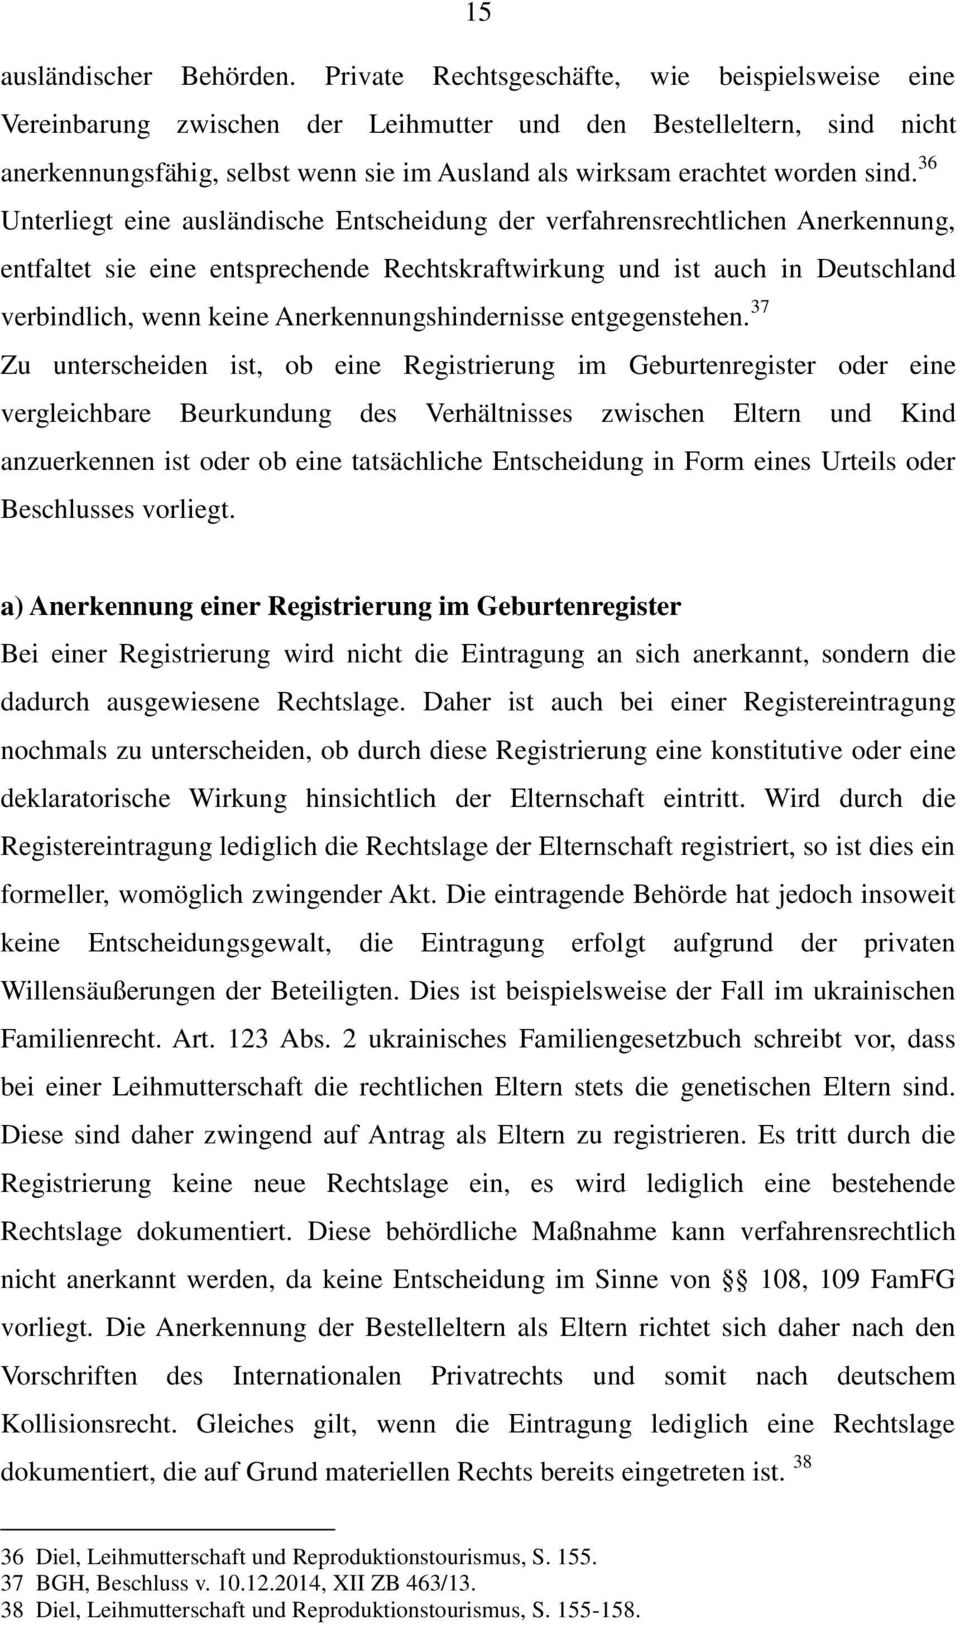 36 Unterliegt eine ausländische Entscheidung der verfahrensrechtlichen Anerkennung, entfaltet sie eine entsprechende Rechtskraftwirkung und ist auch in Deutschland verbindlich, wenn keine